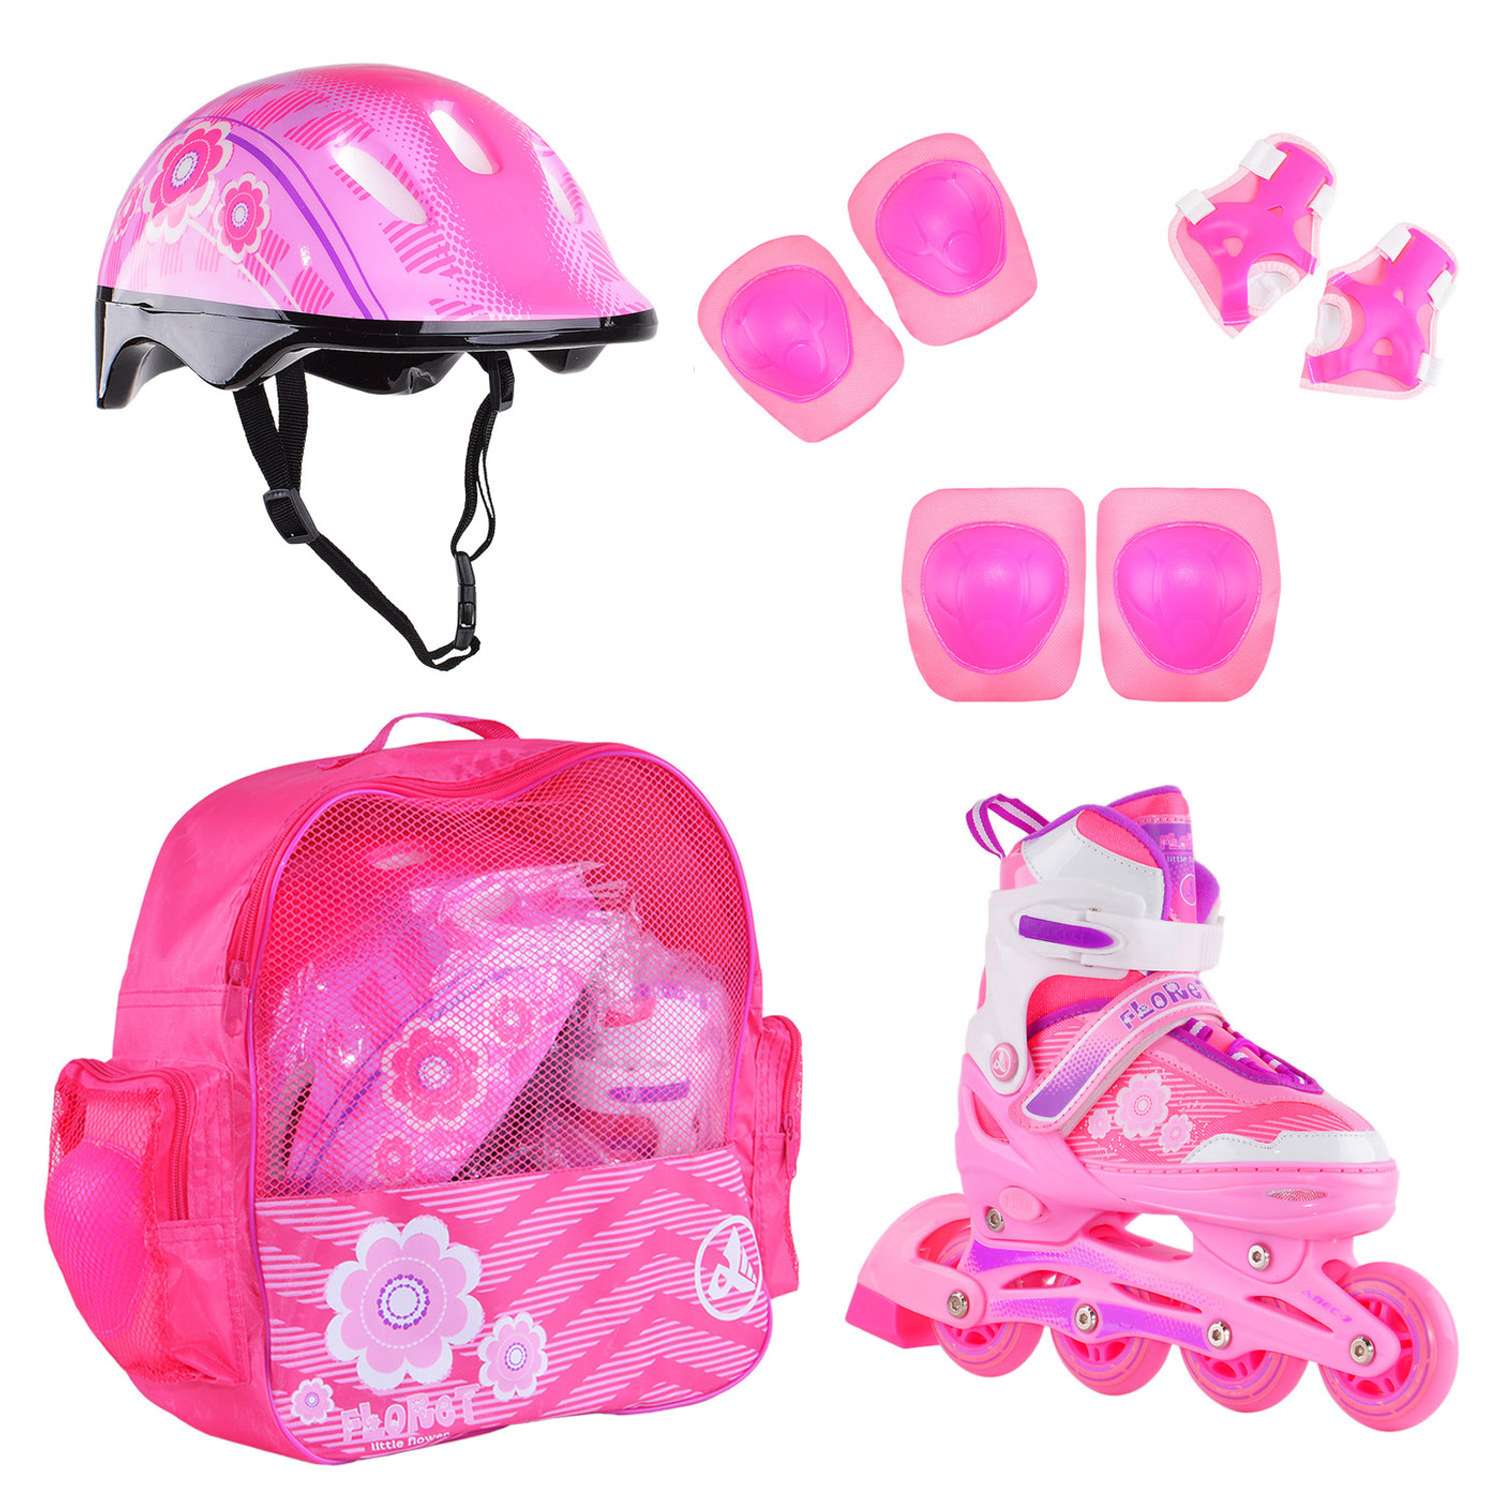 Набор роликовые коньки Alpha Caprice раздвижные Floret White Pink Violet шлем и набор защиты в сумке размер M 35-38 - фото 1